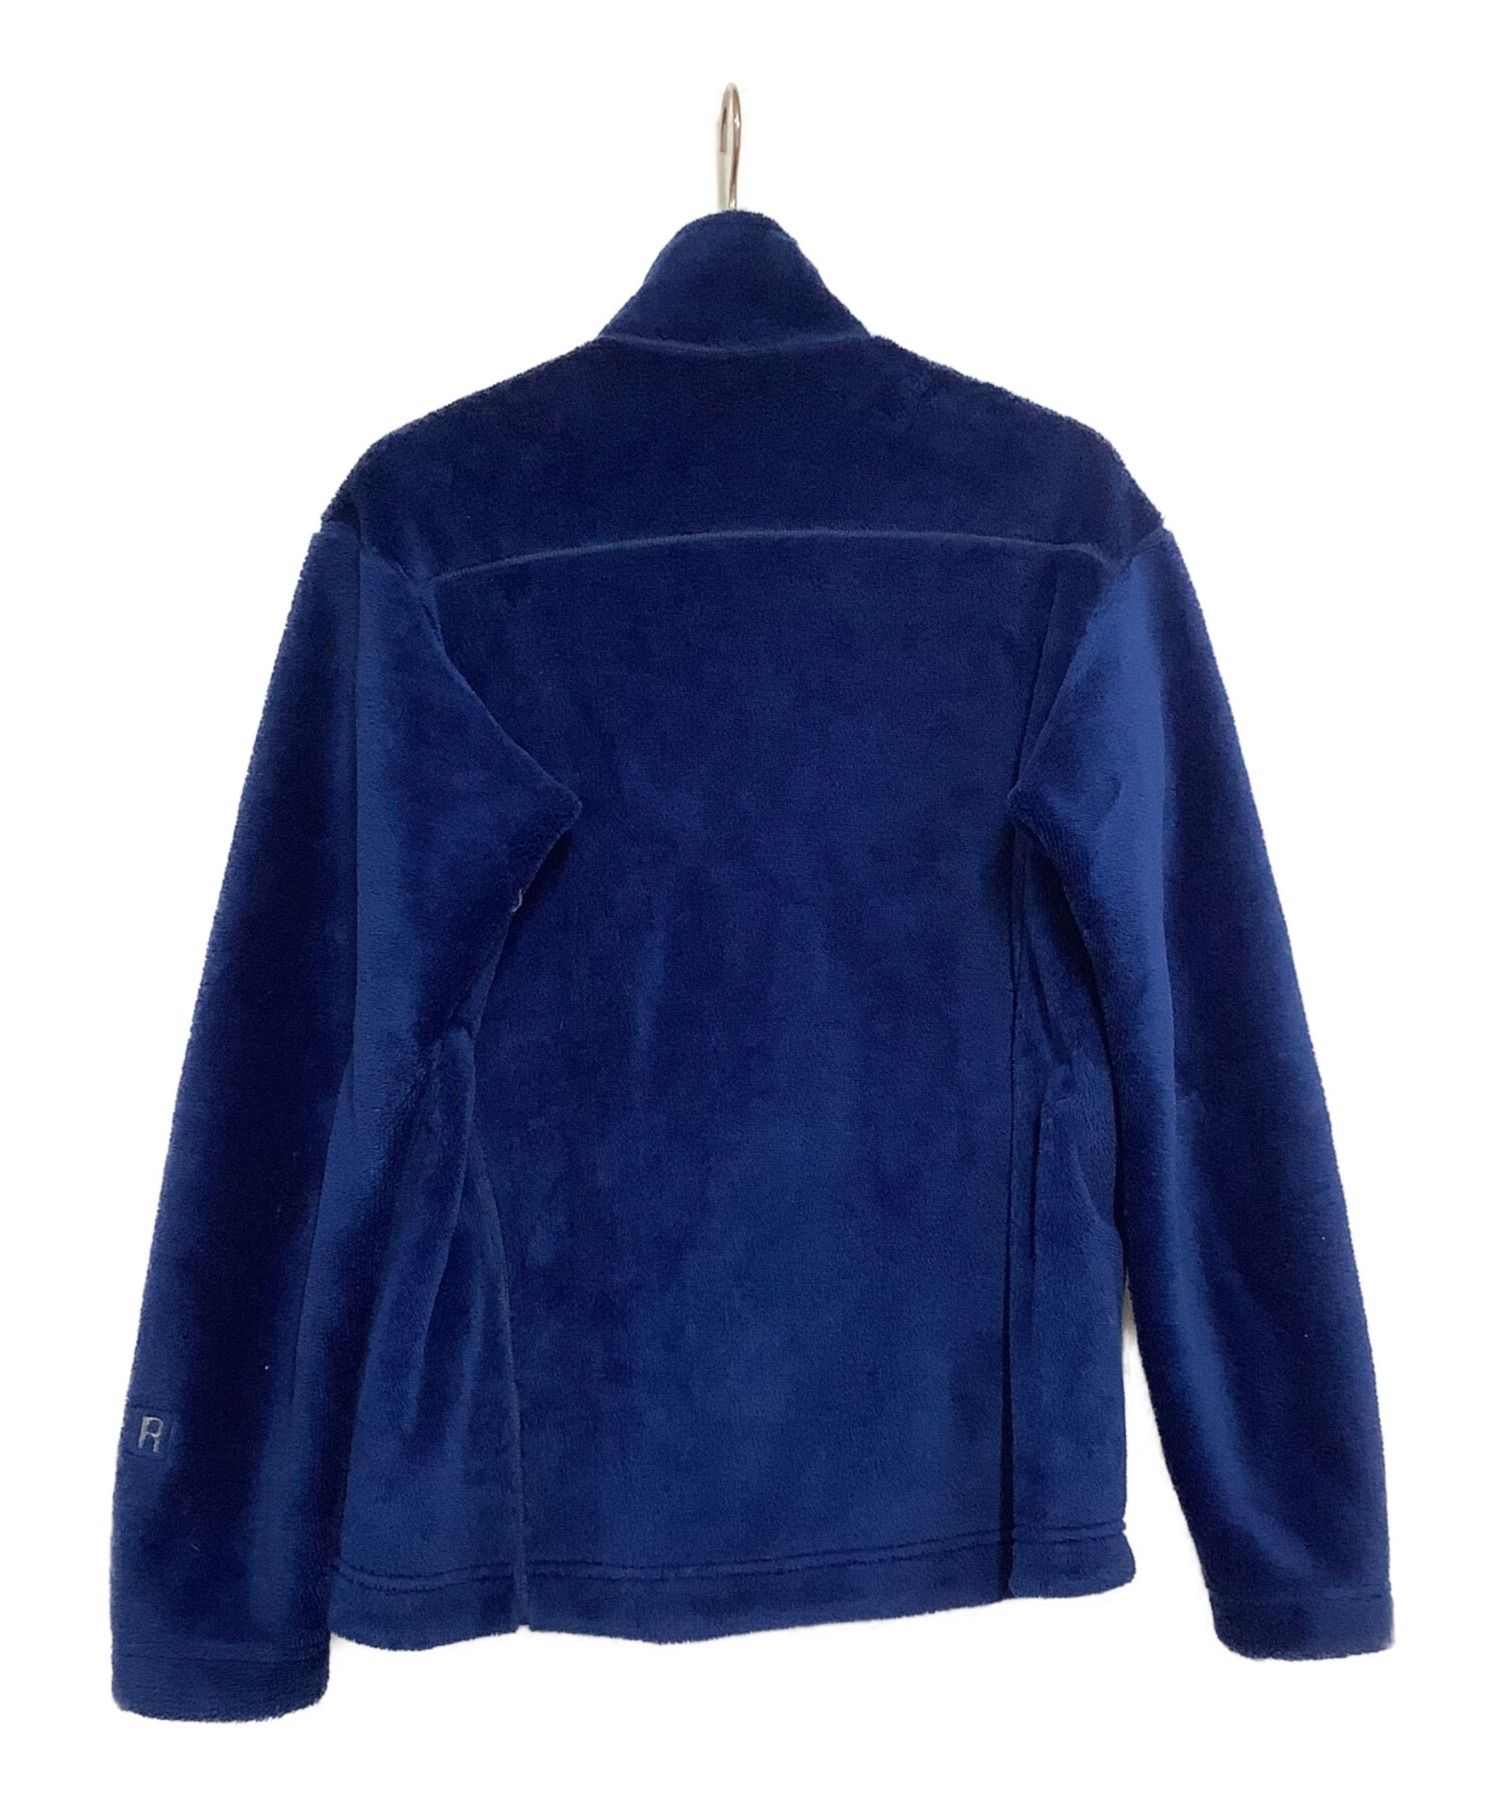 Patagonia (パタゴニア) フリースジャケット ブルー サイズ:M